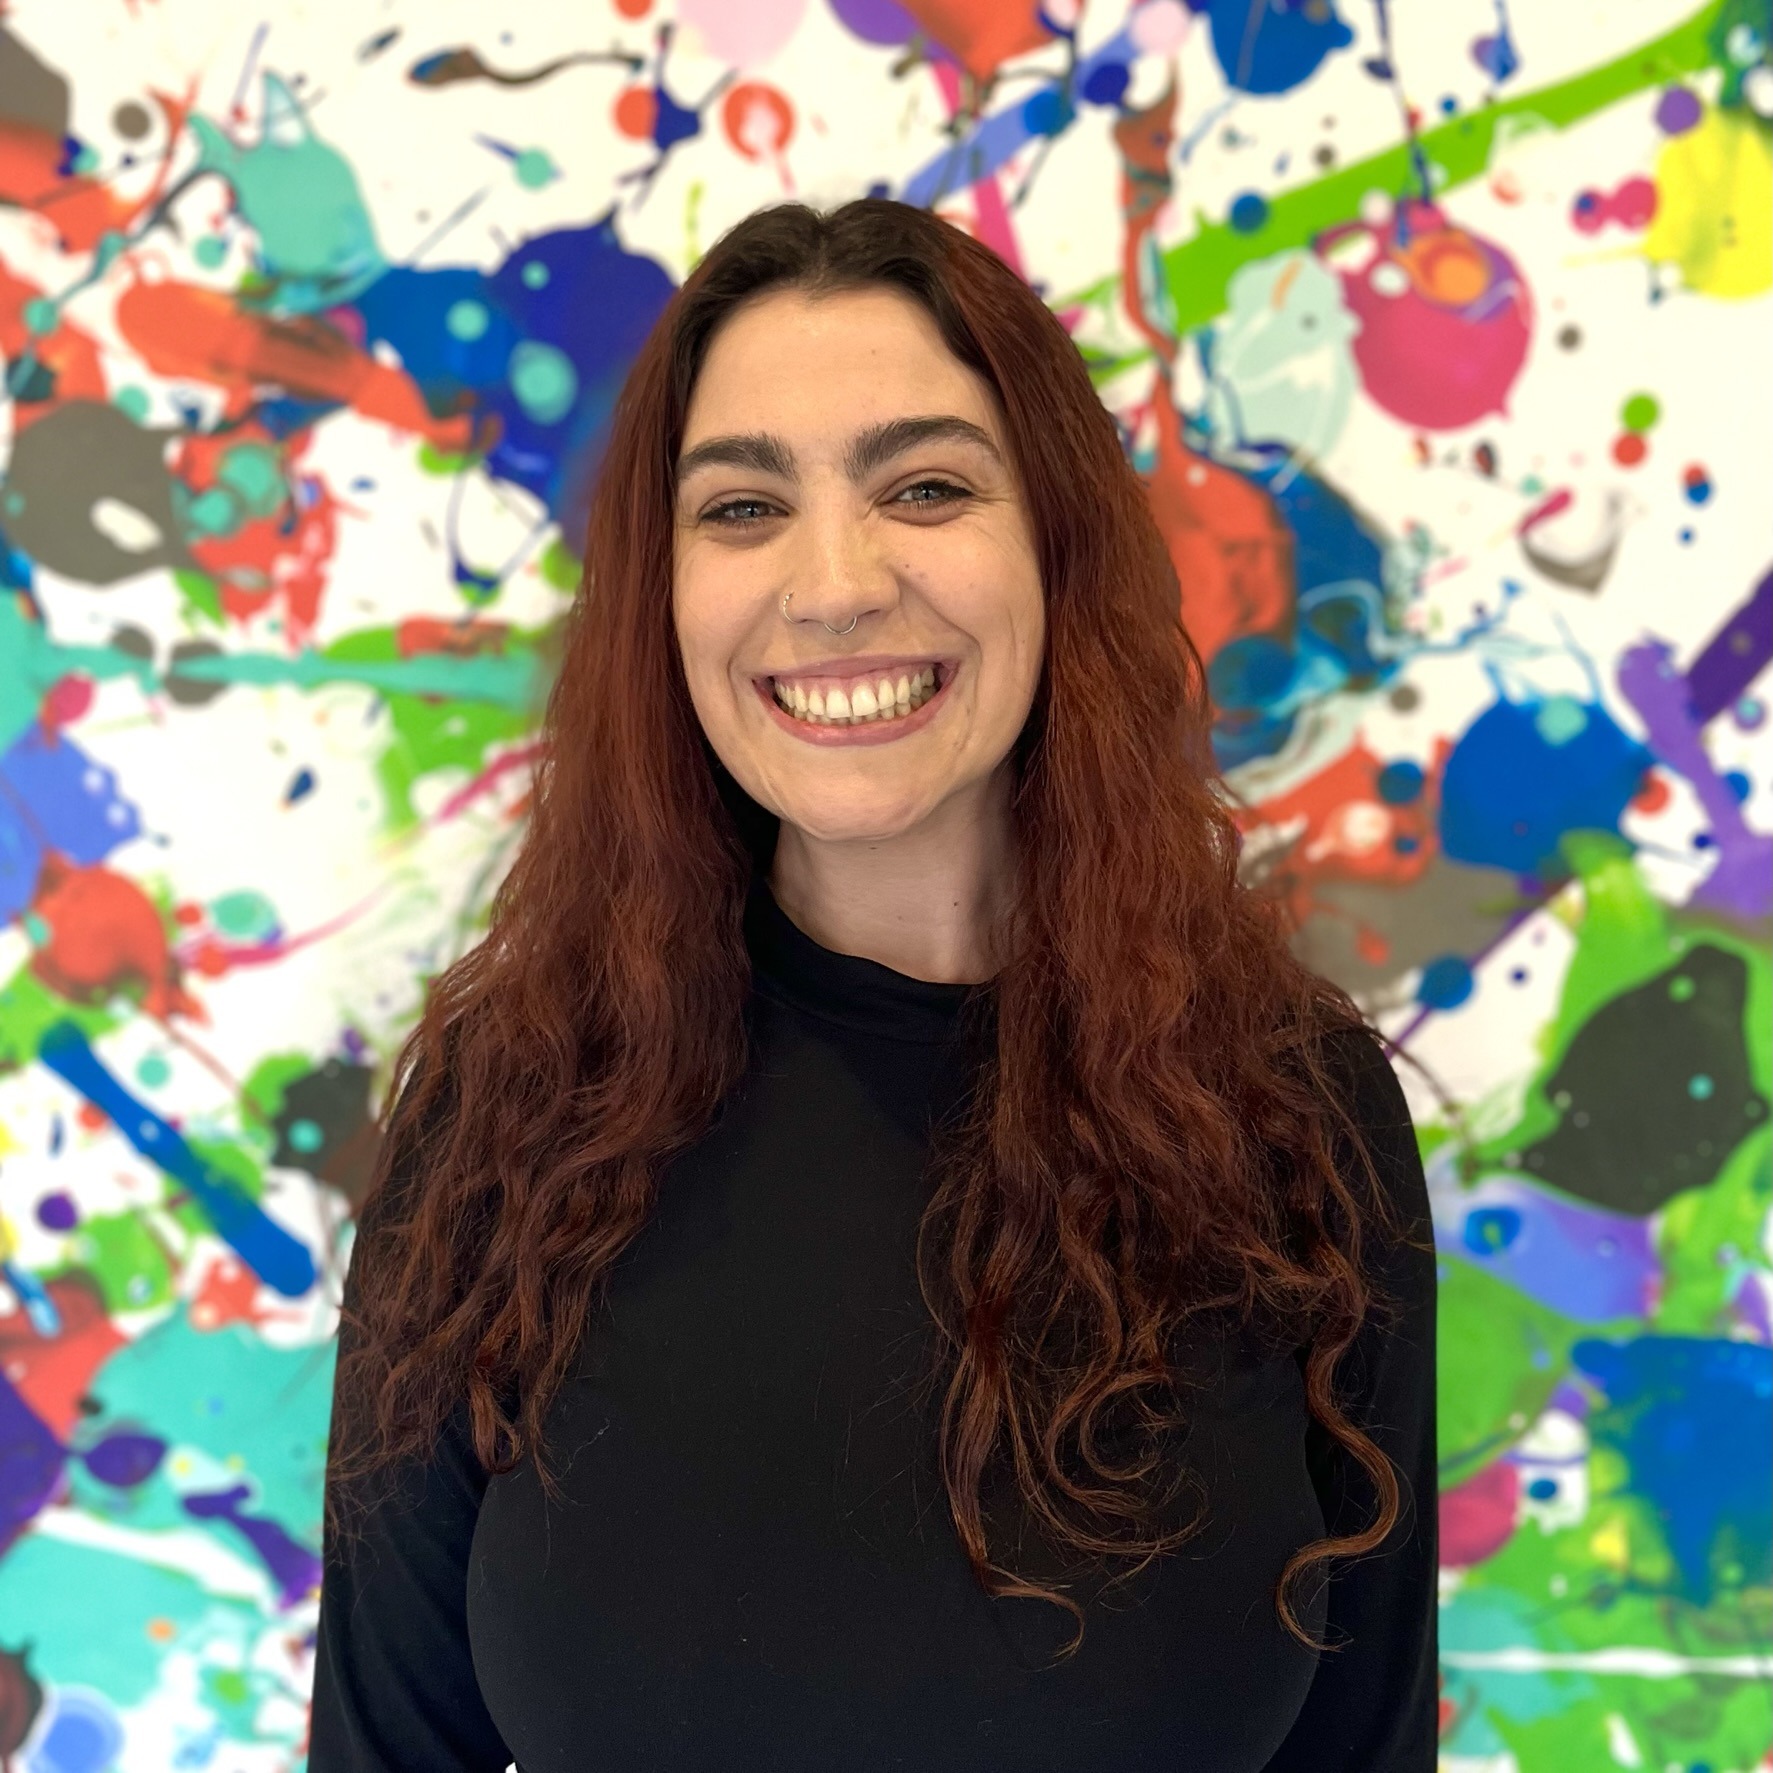 Alyssa DelGiorno, instructor of painting at Hudson Valley InterArts